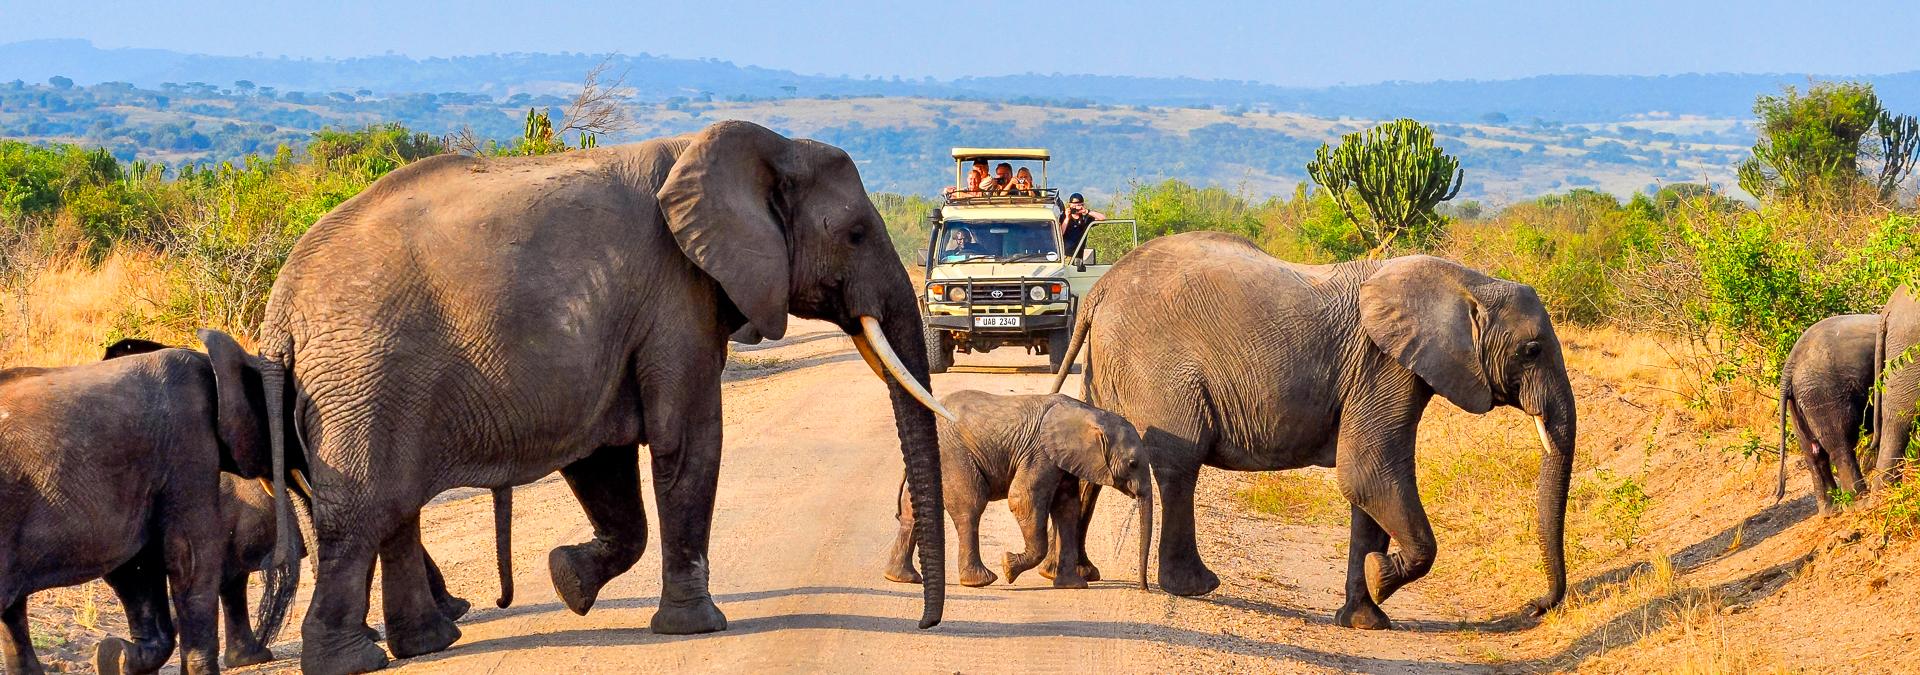 Hier haben Elefanten Vorfahrt |  Dieter Gerhards / Chamleon